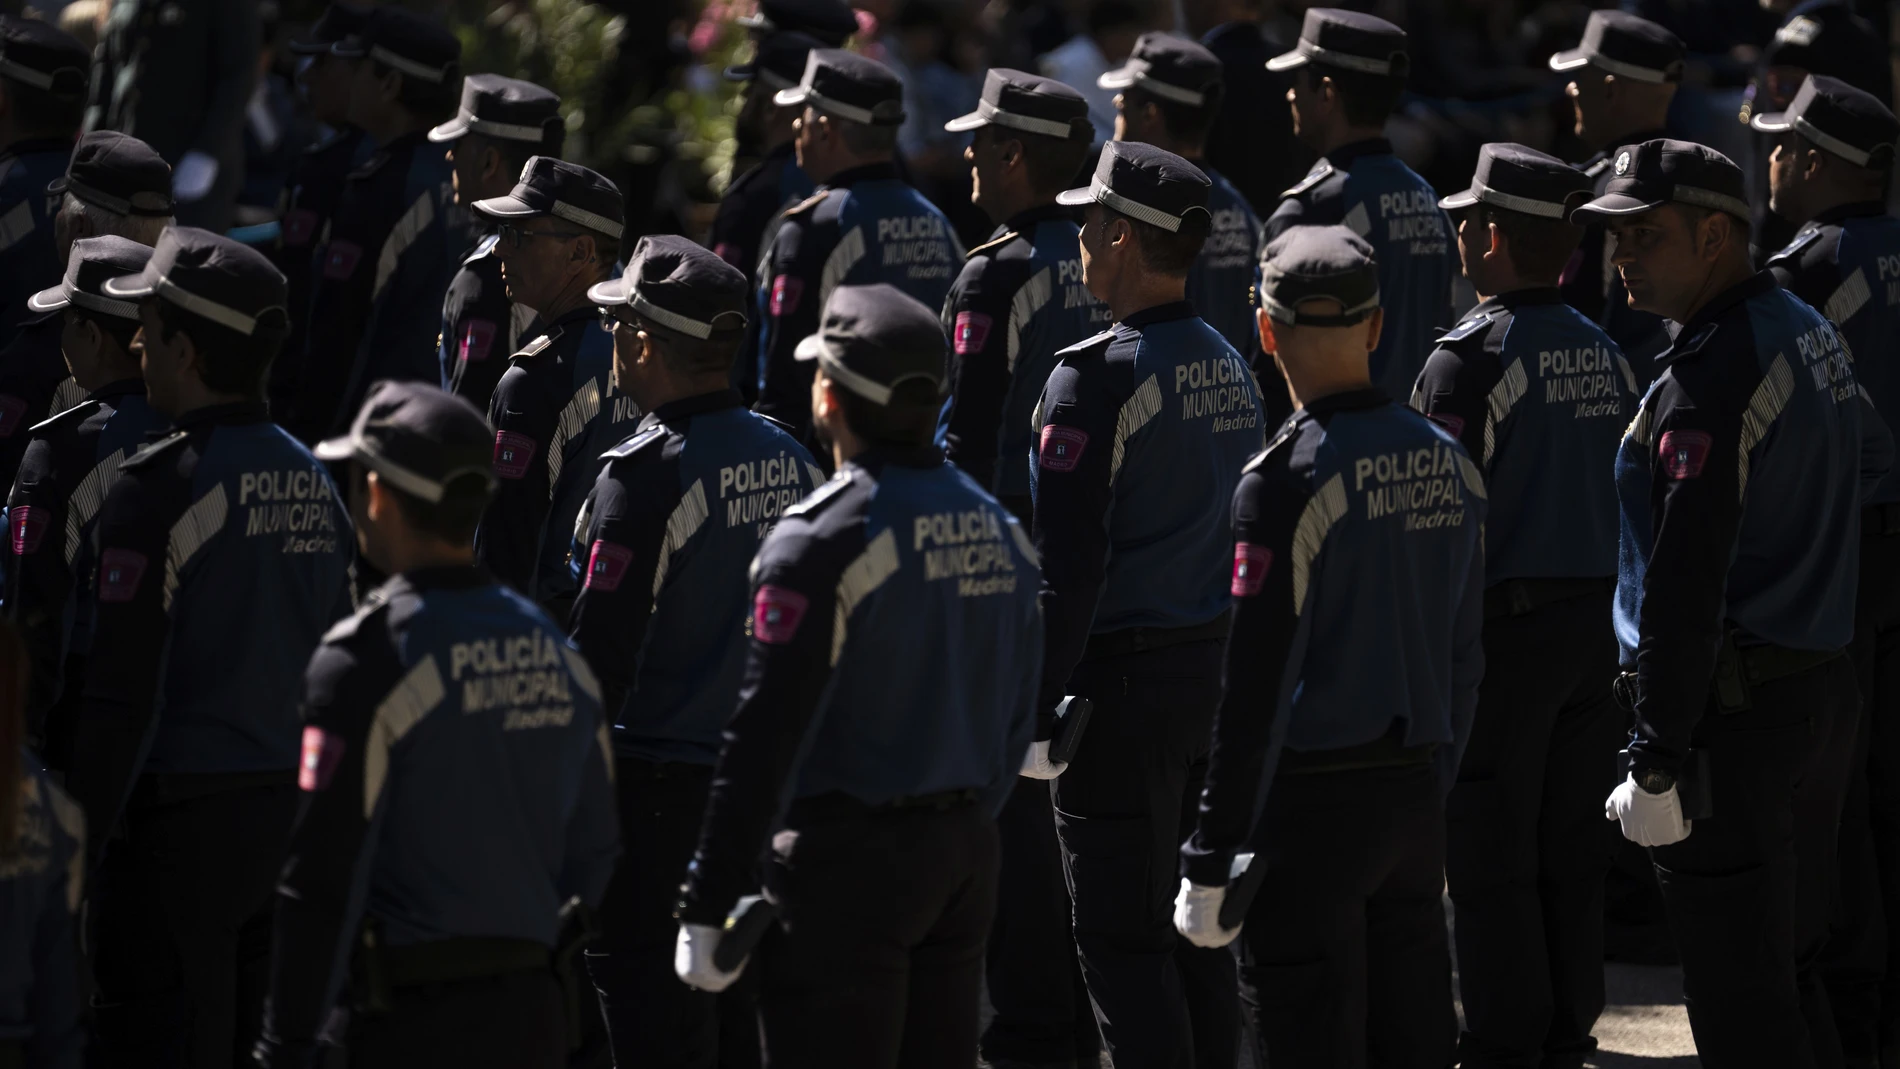 Agentes de la Policia Municipal durante el acto de conmemoracion de la festividad de San Juan Bautista, patron de la Policia Municipal, en el parque de El Retiro